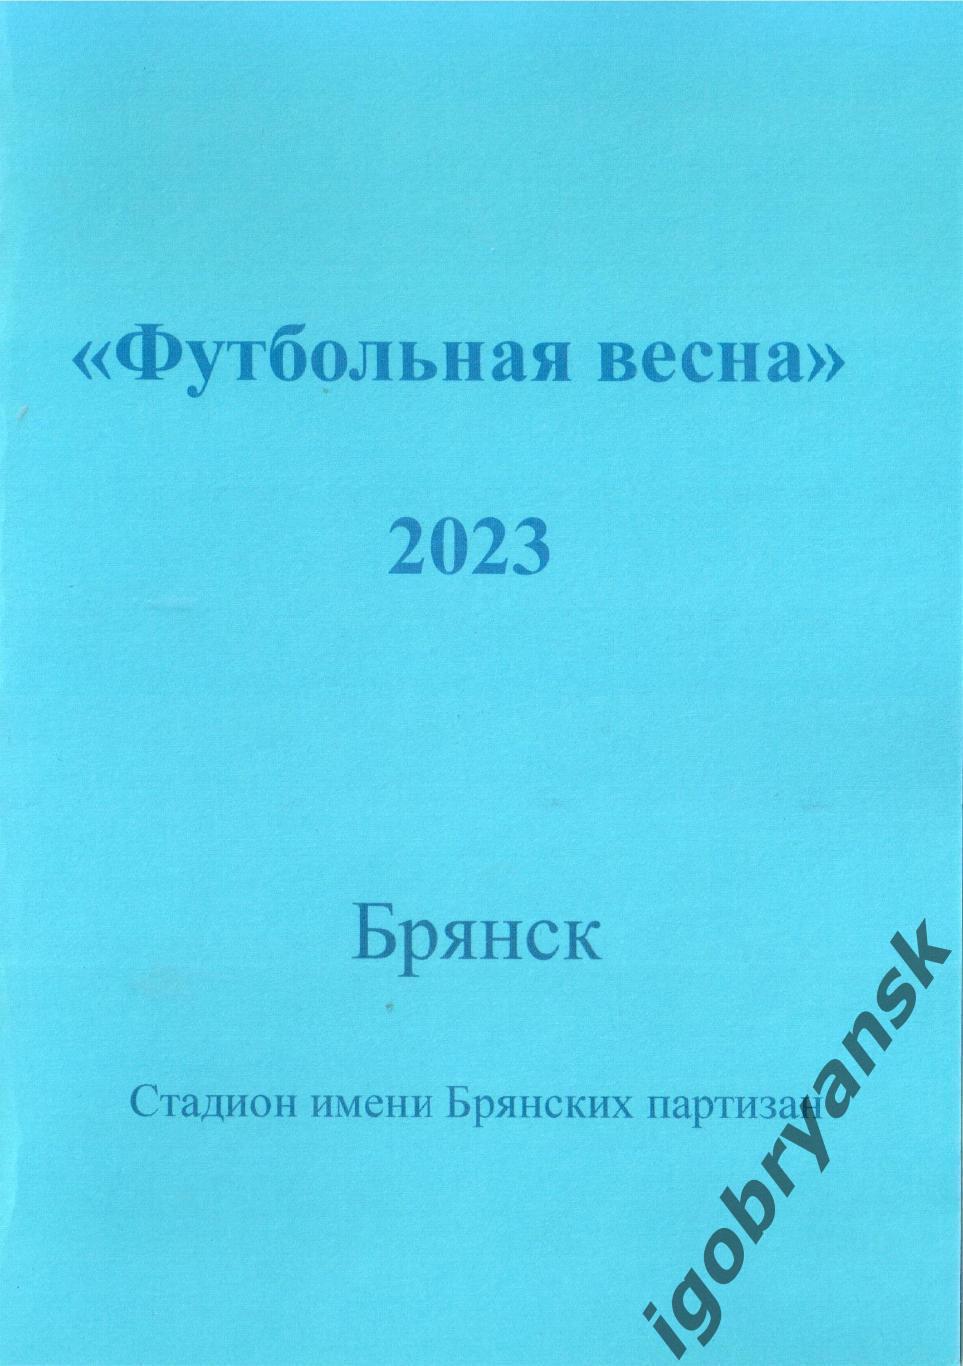 Футбольная весна - 2023 Брянск